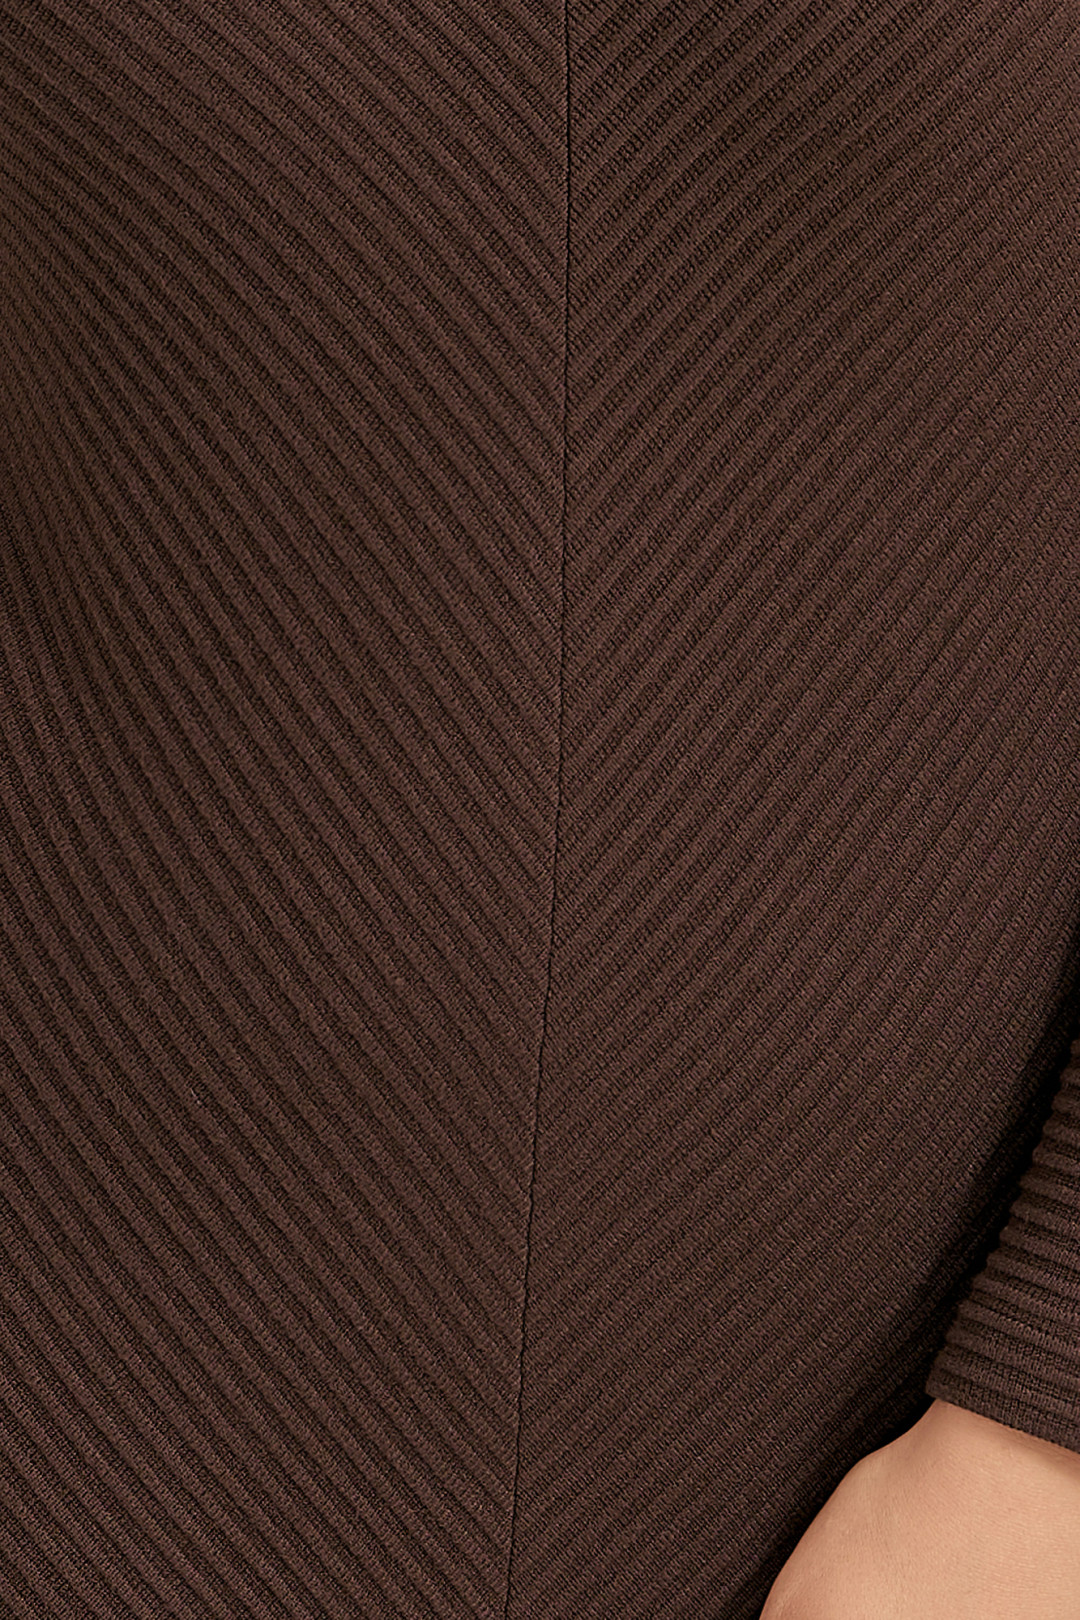 Платье Ива 1488 коричневый